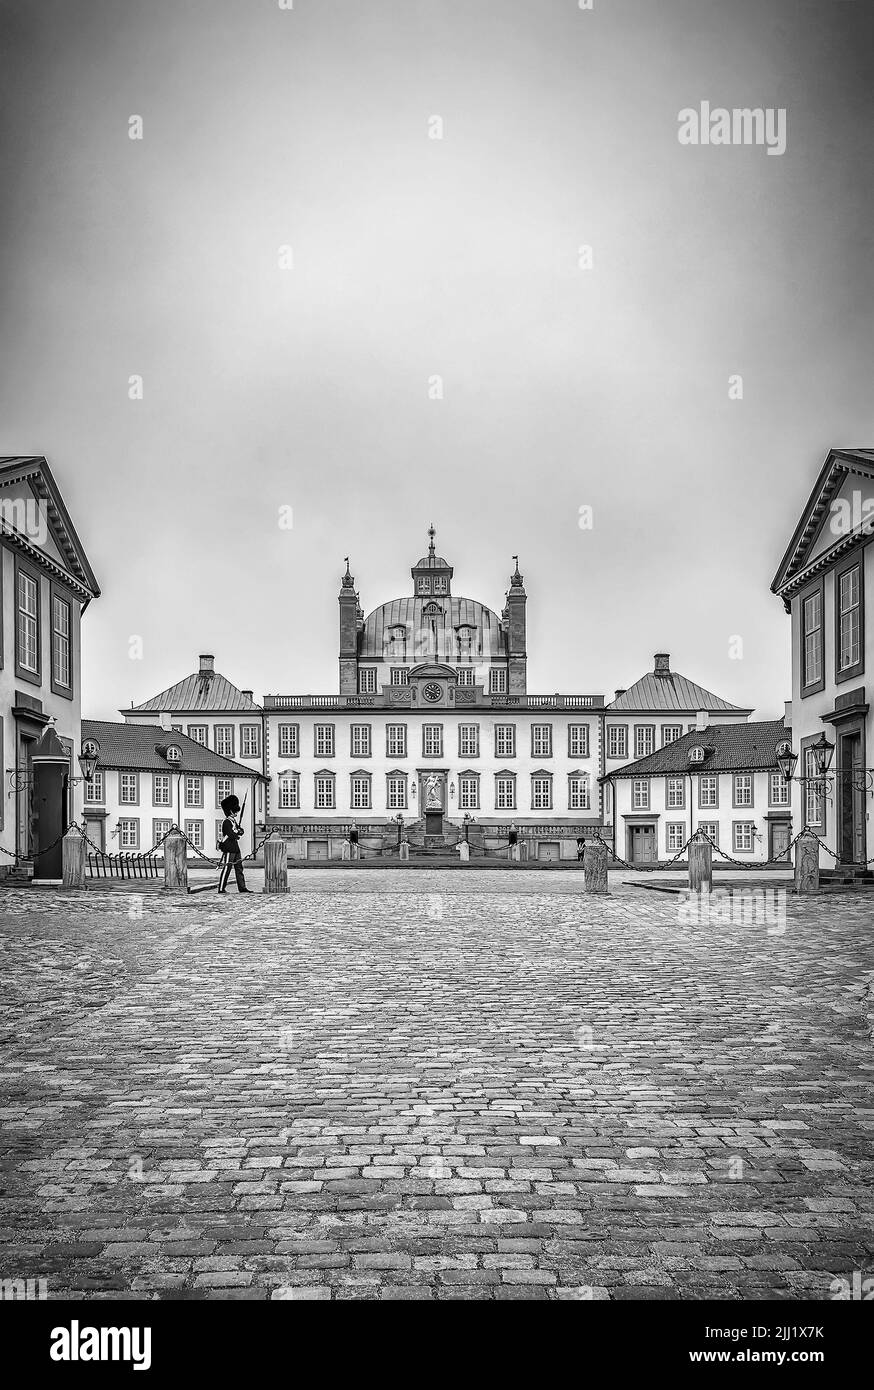 Una fotografía vertical en escala de grises del castillo de Frederiksborg, Hillerod, Dinamarca Foto de stock